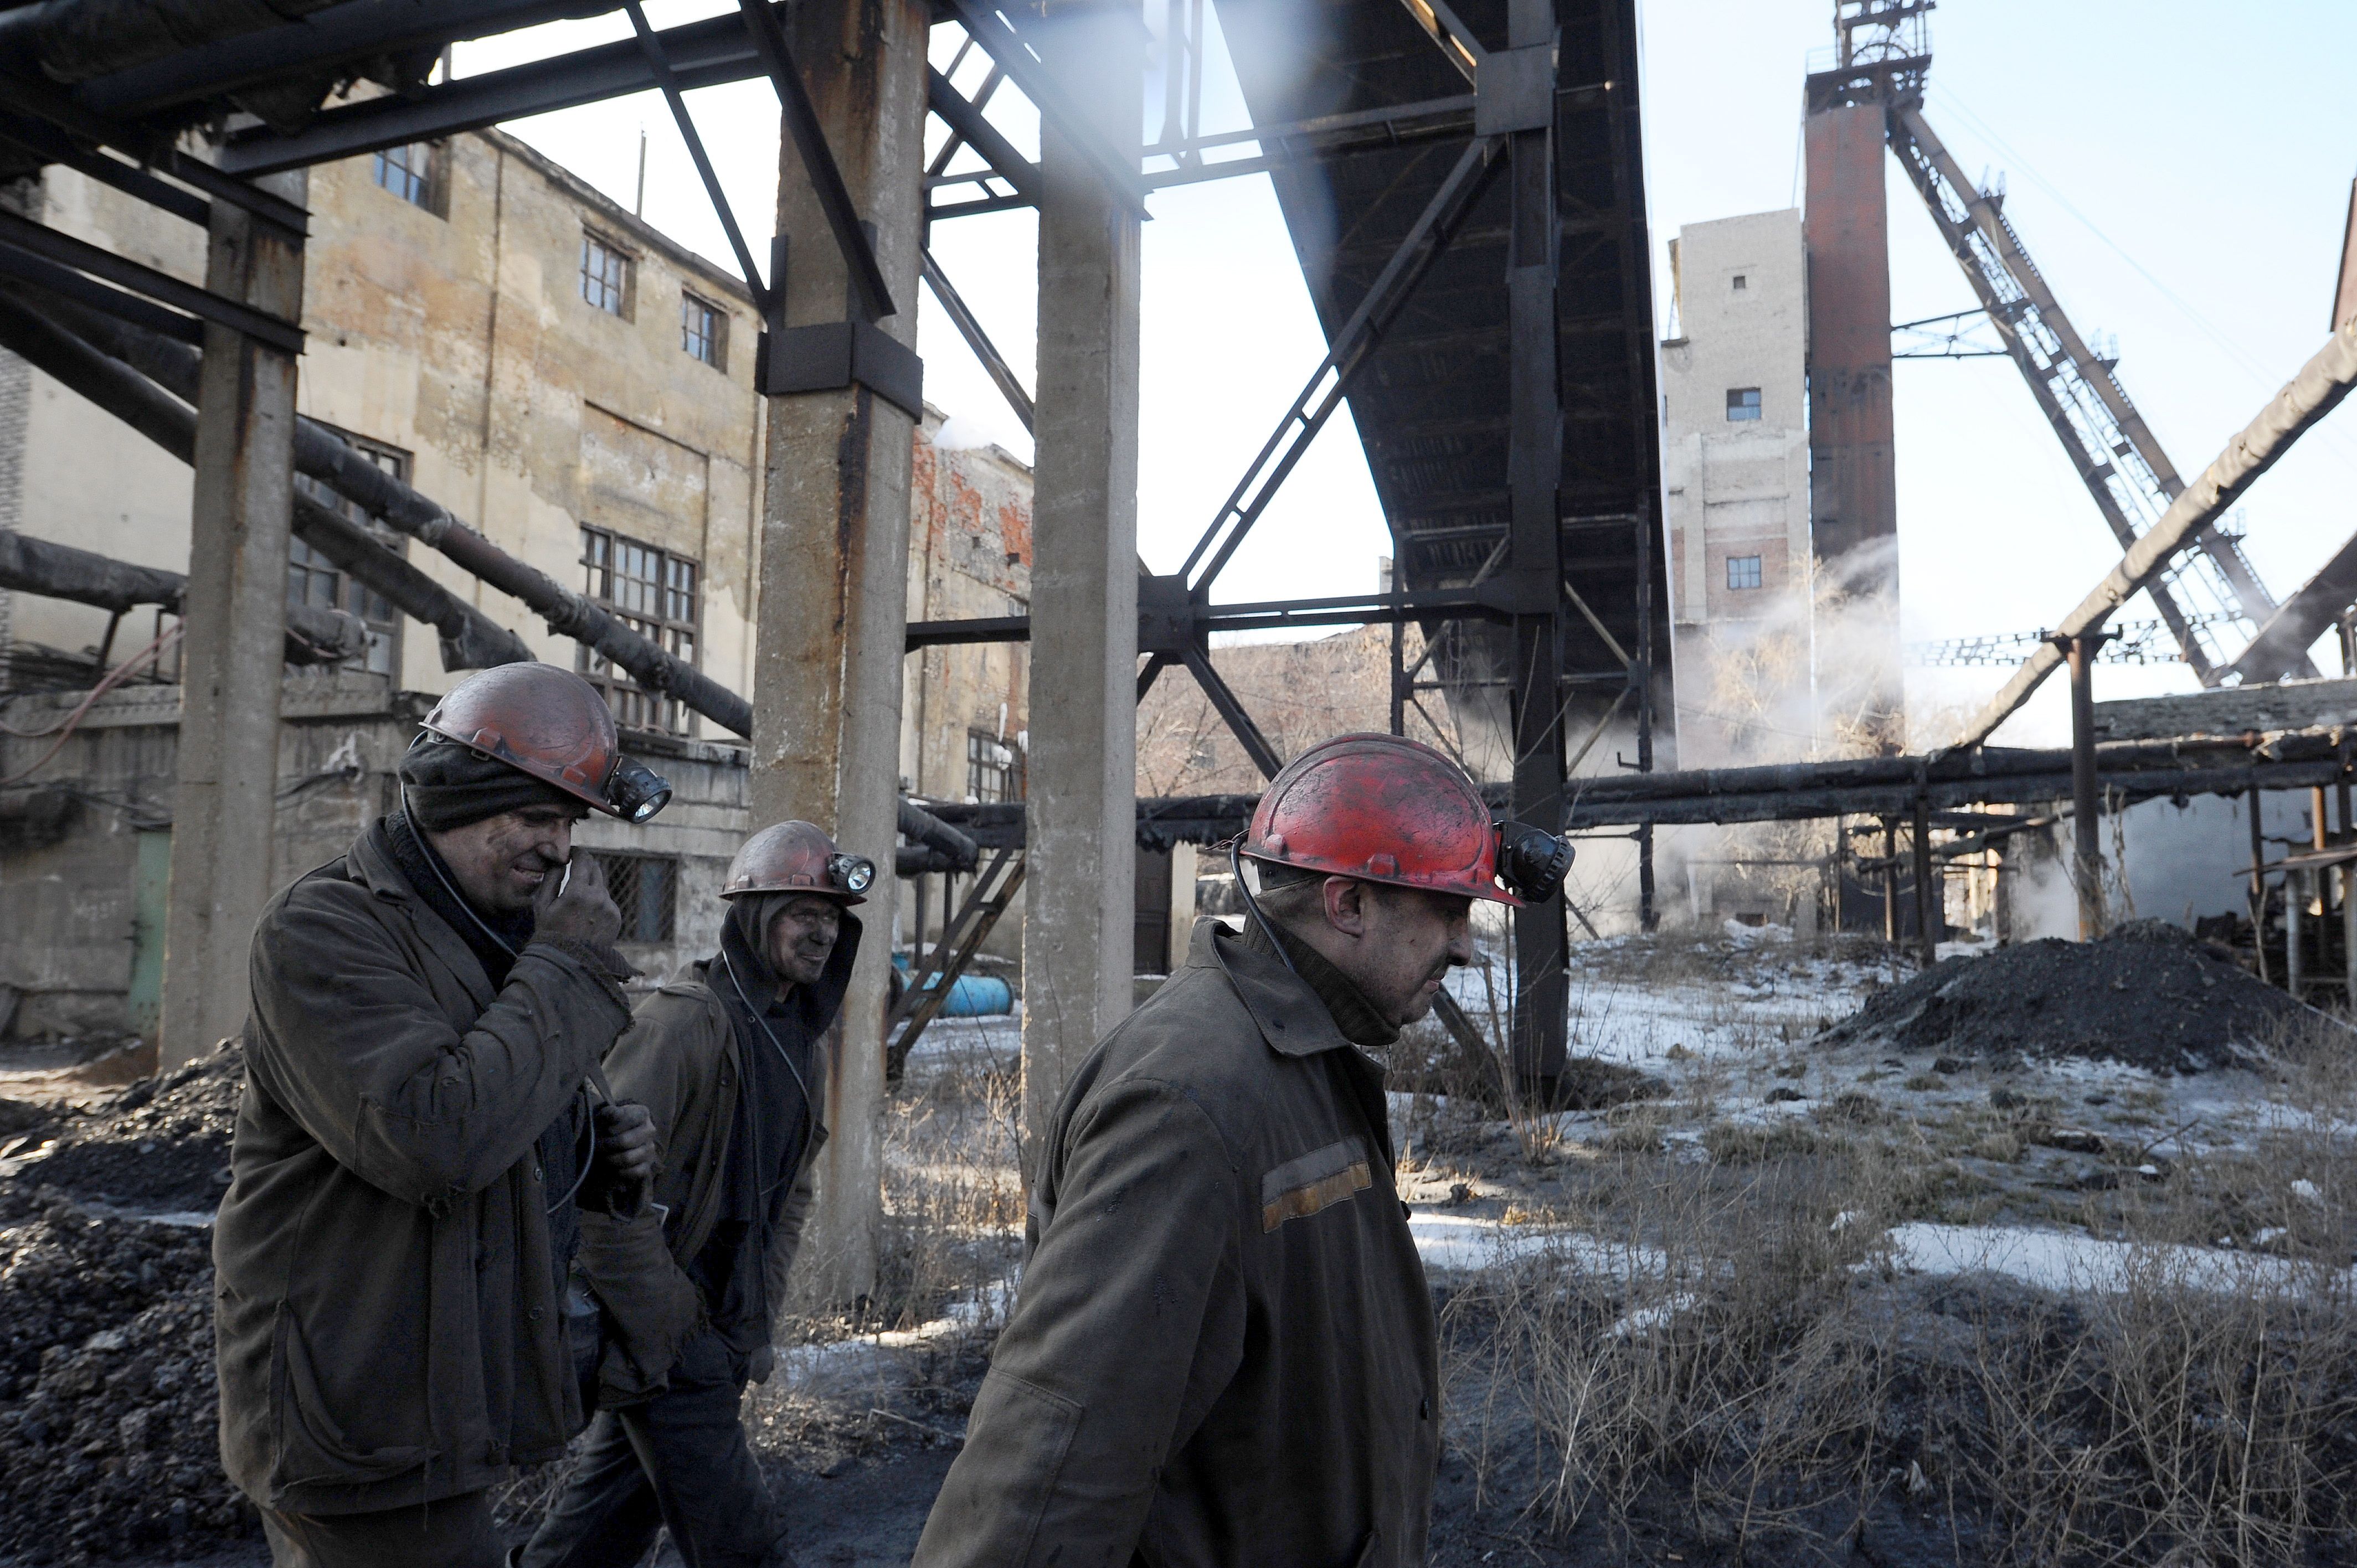 Donbass in der Ukraine - Umweltkatastrophe im Kriegsgebiet